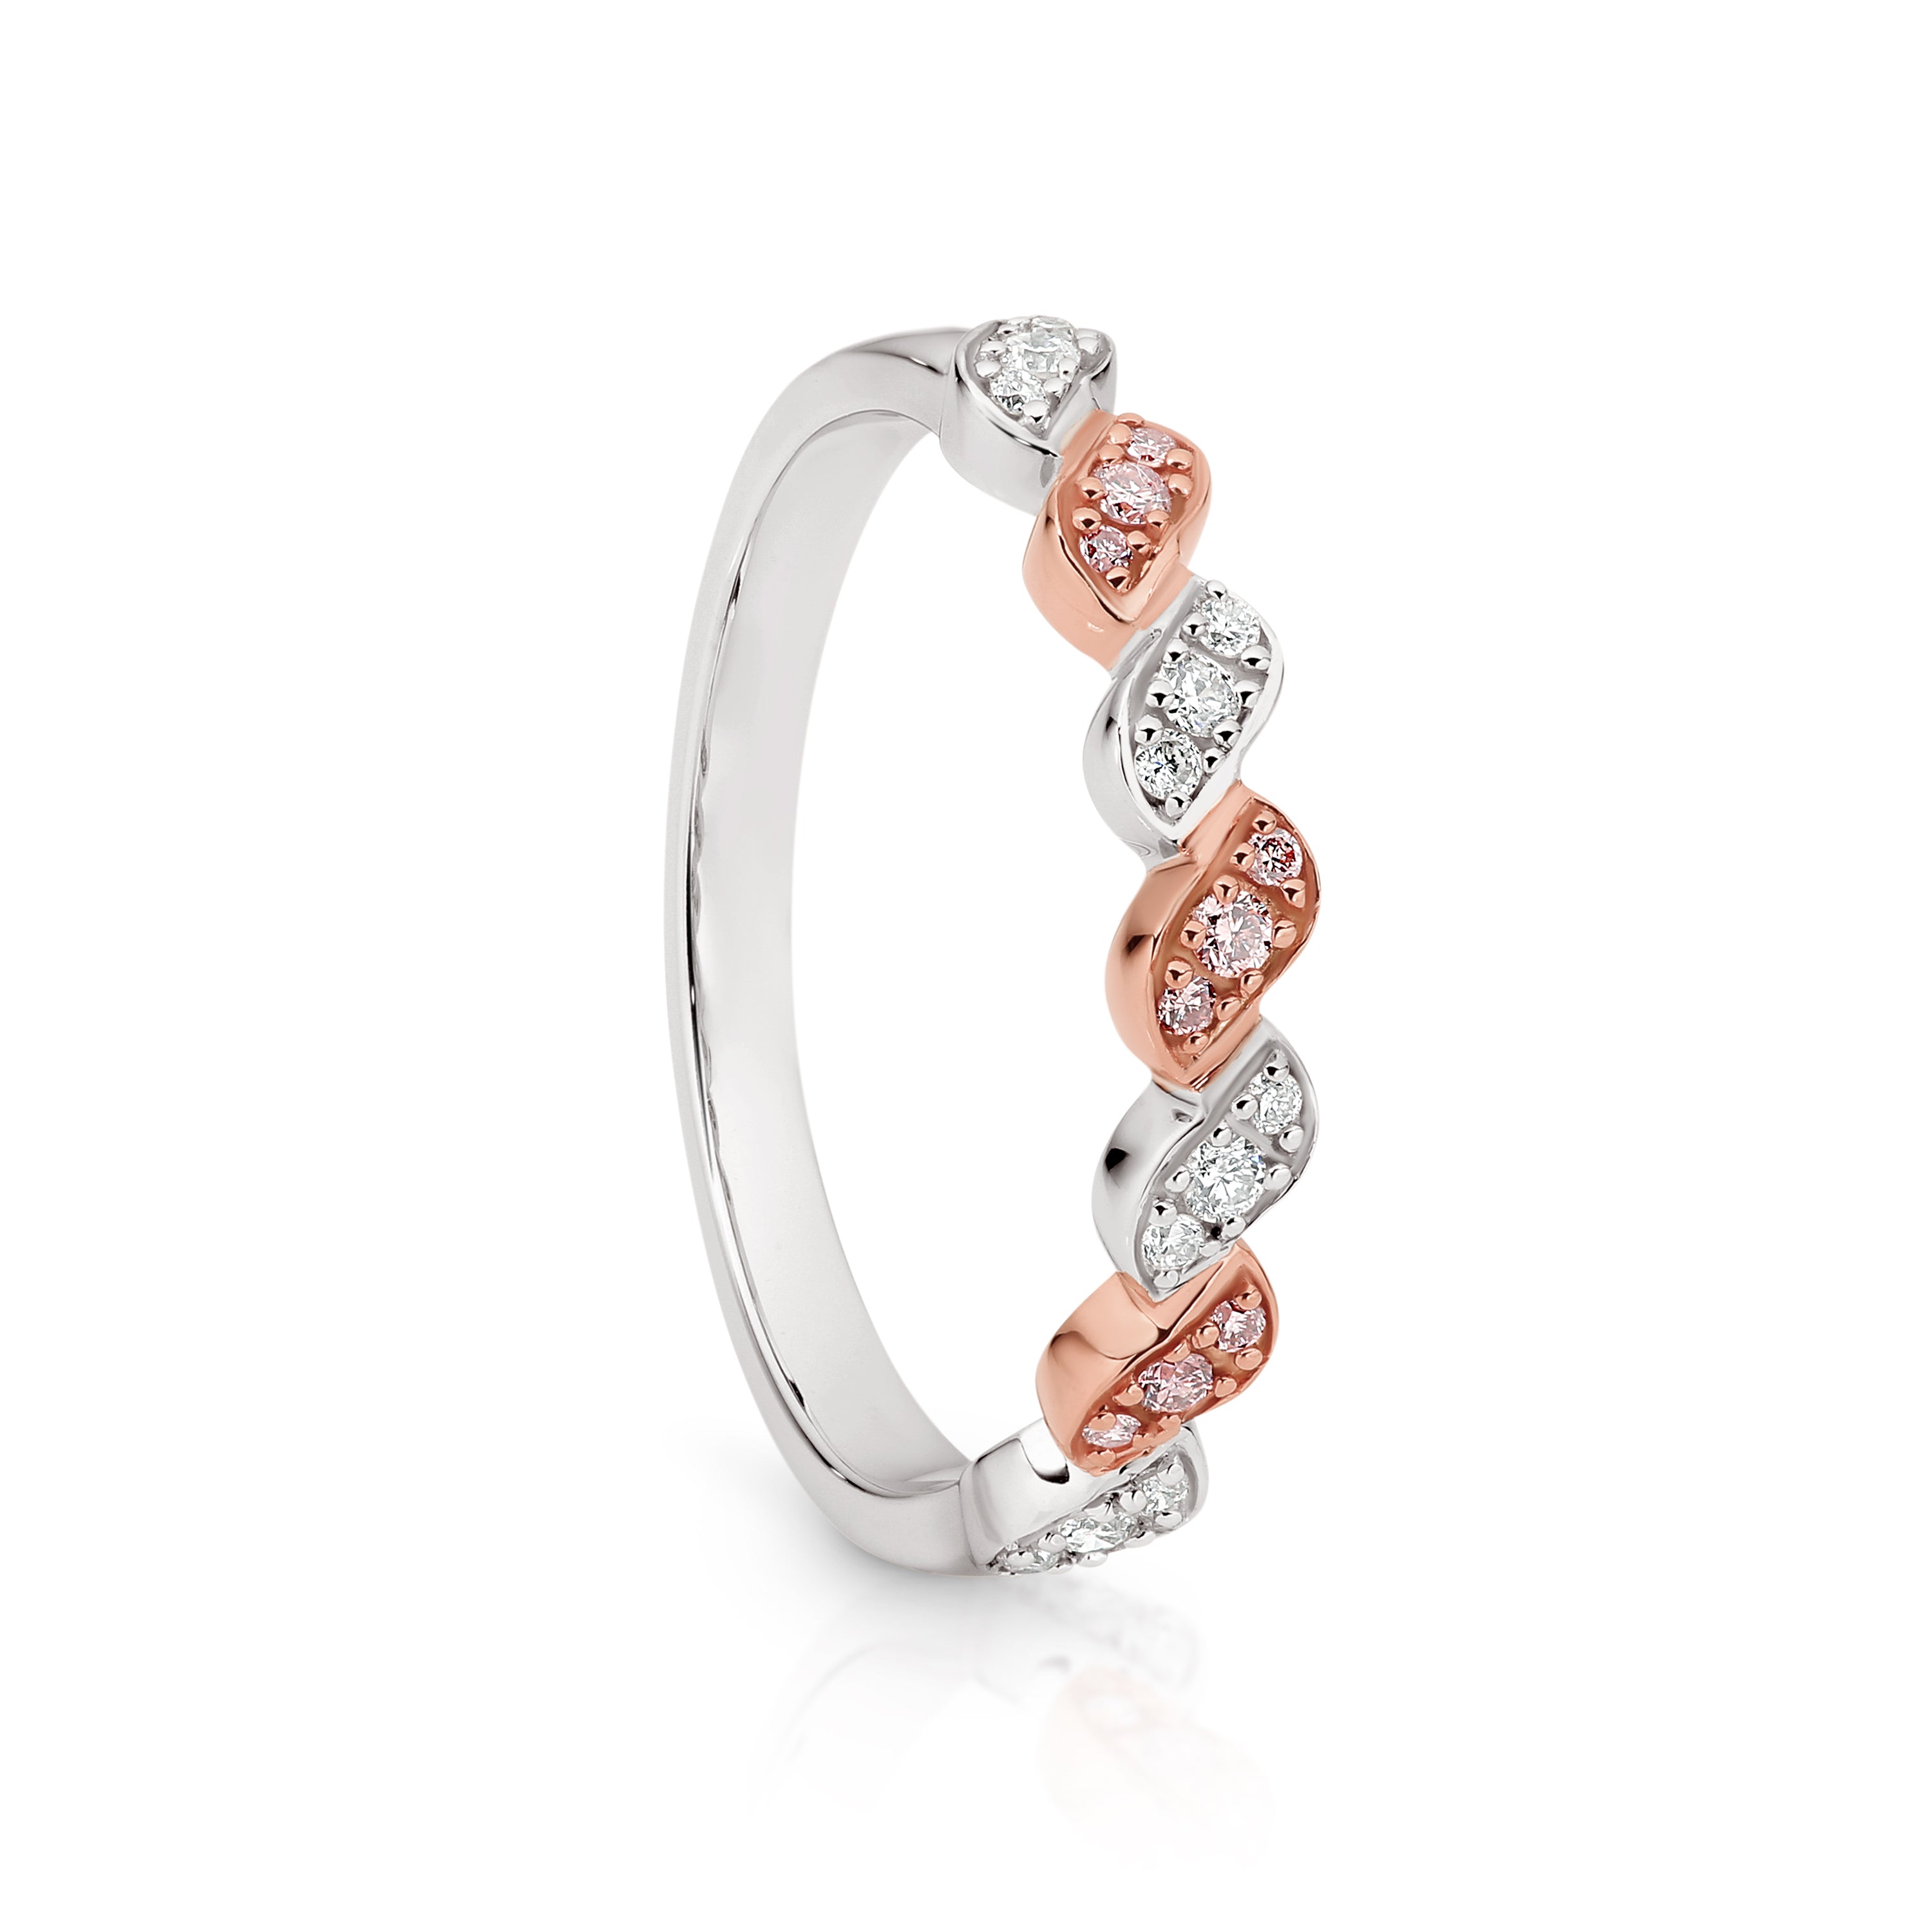 Natural Australian Pink Diamond Ring set in 9ct White Gold